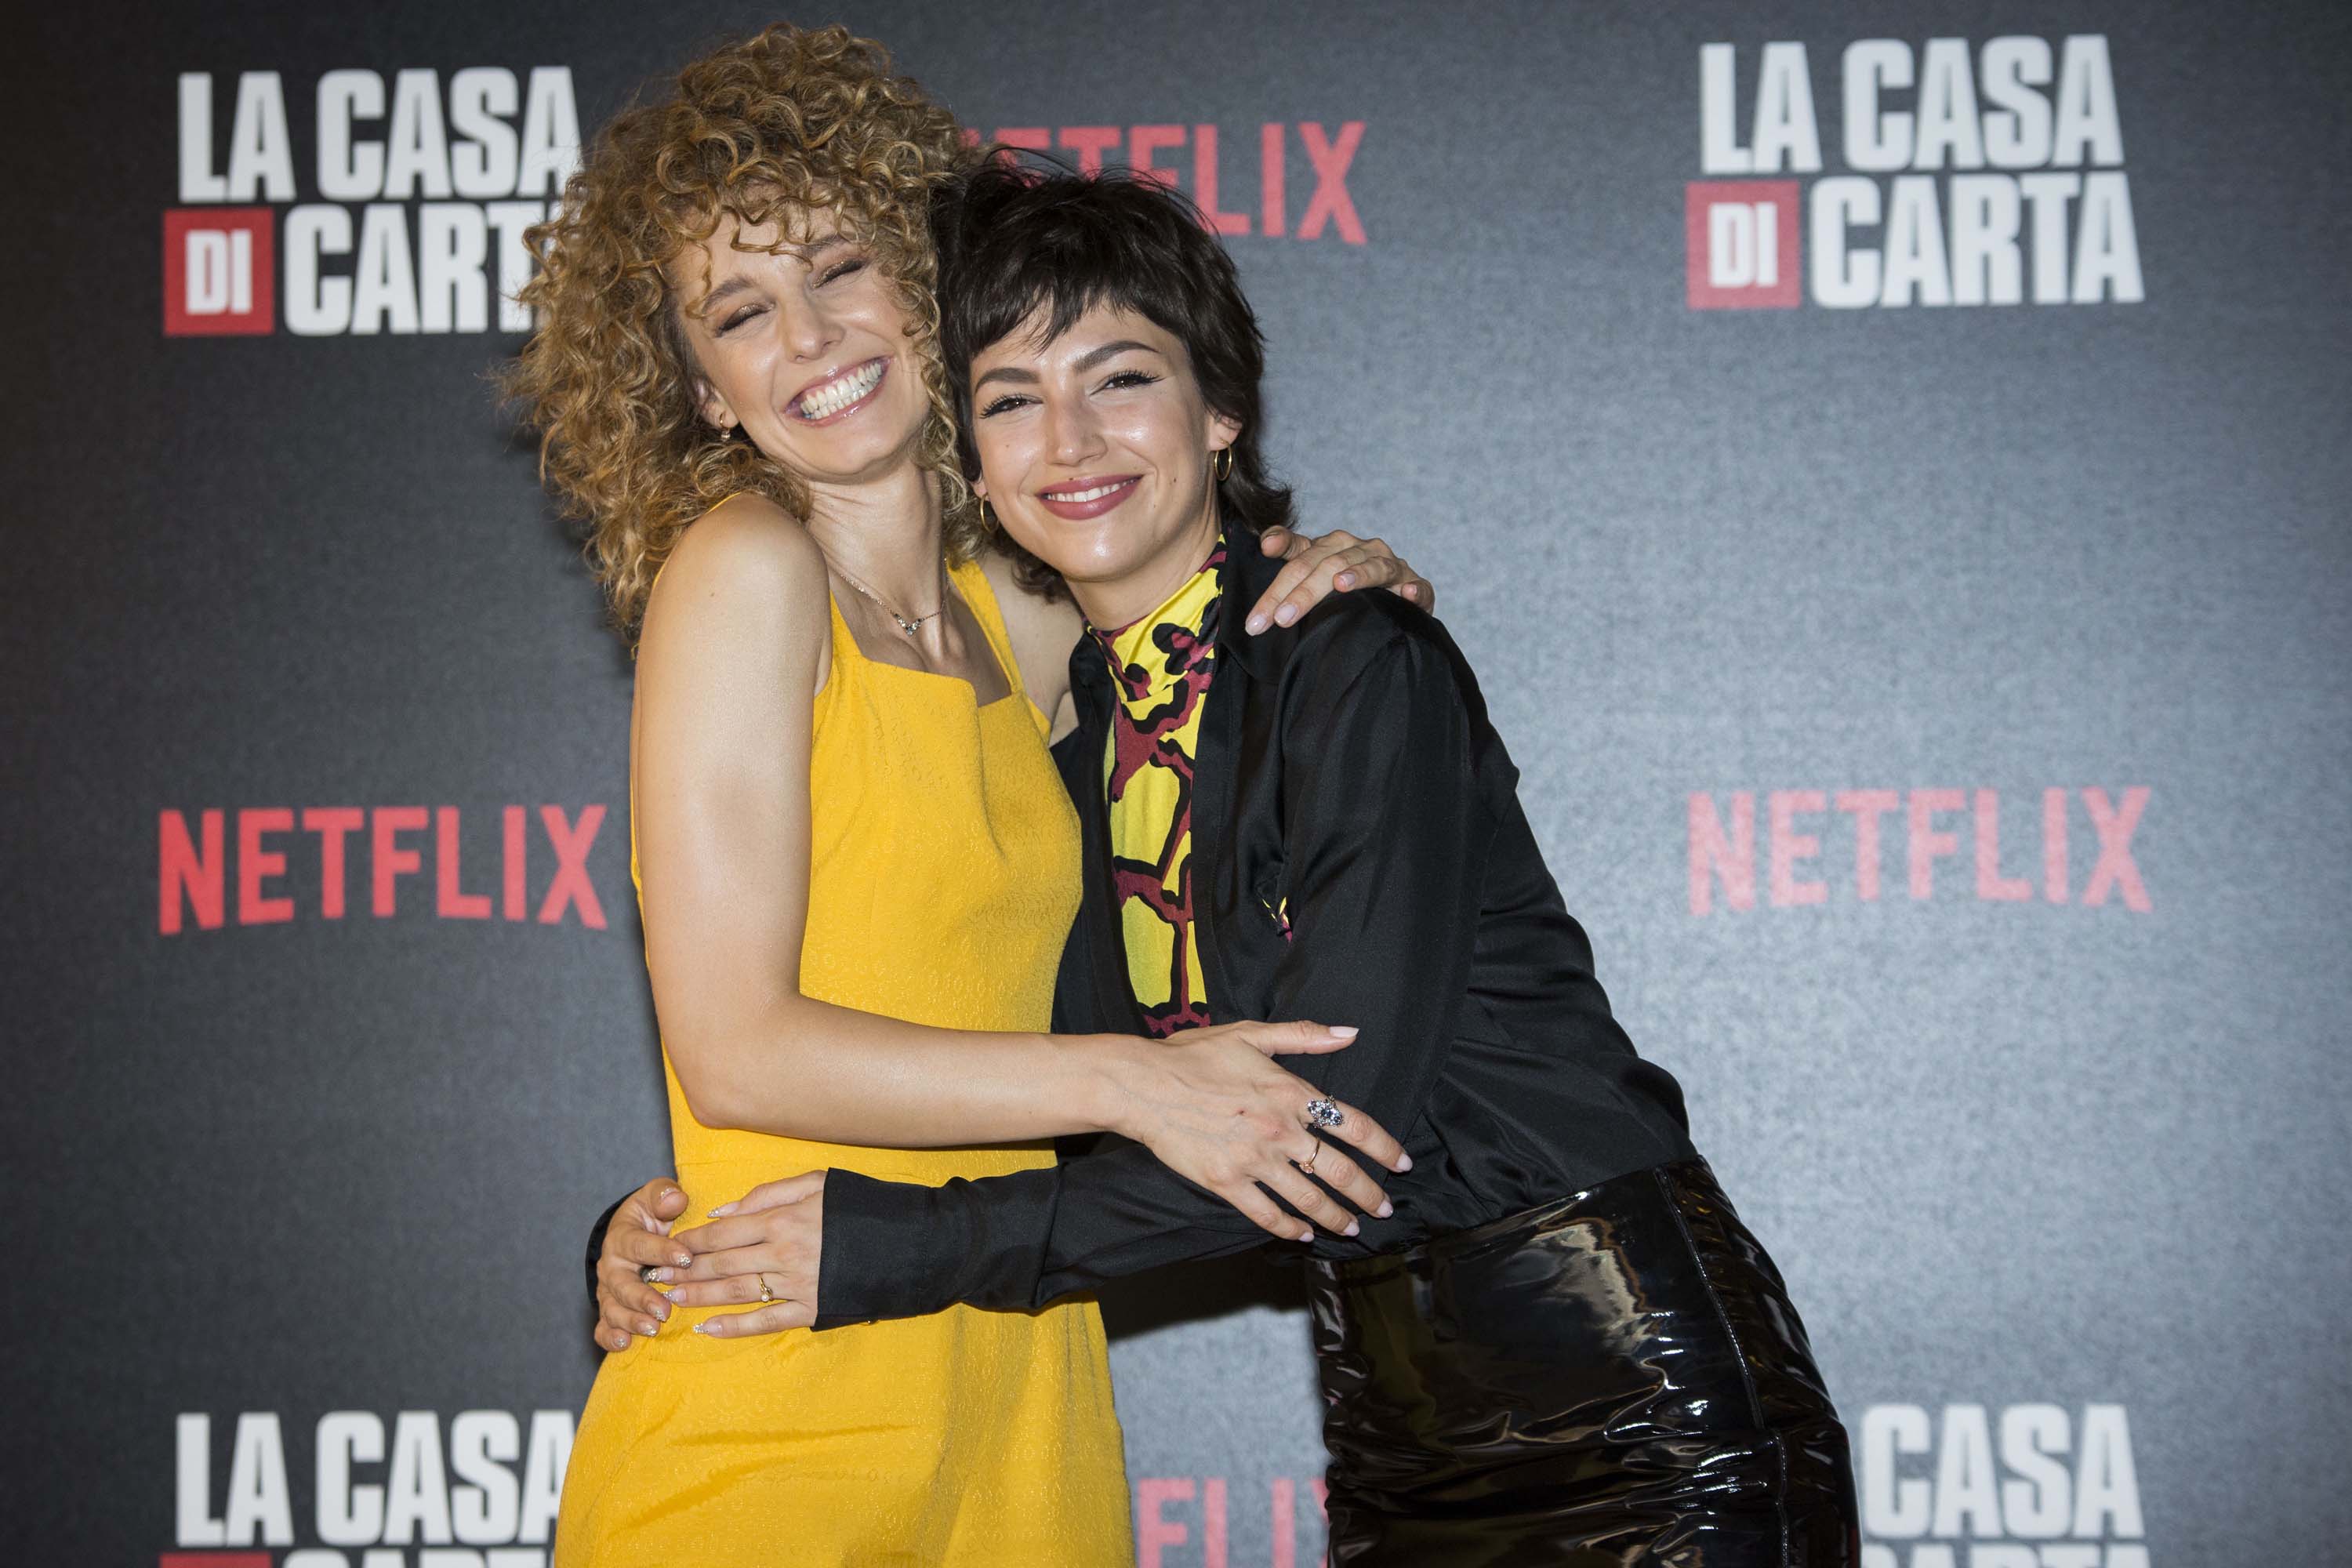 Ursula Corbero attends the photocall of the Netflix tv show “La Casa di Carta”